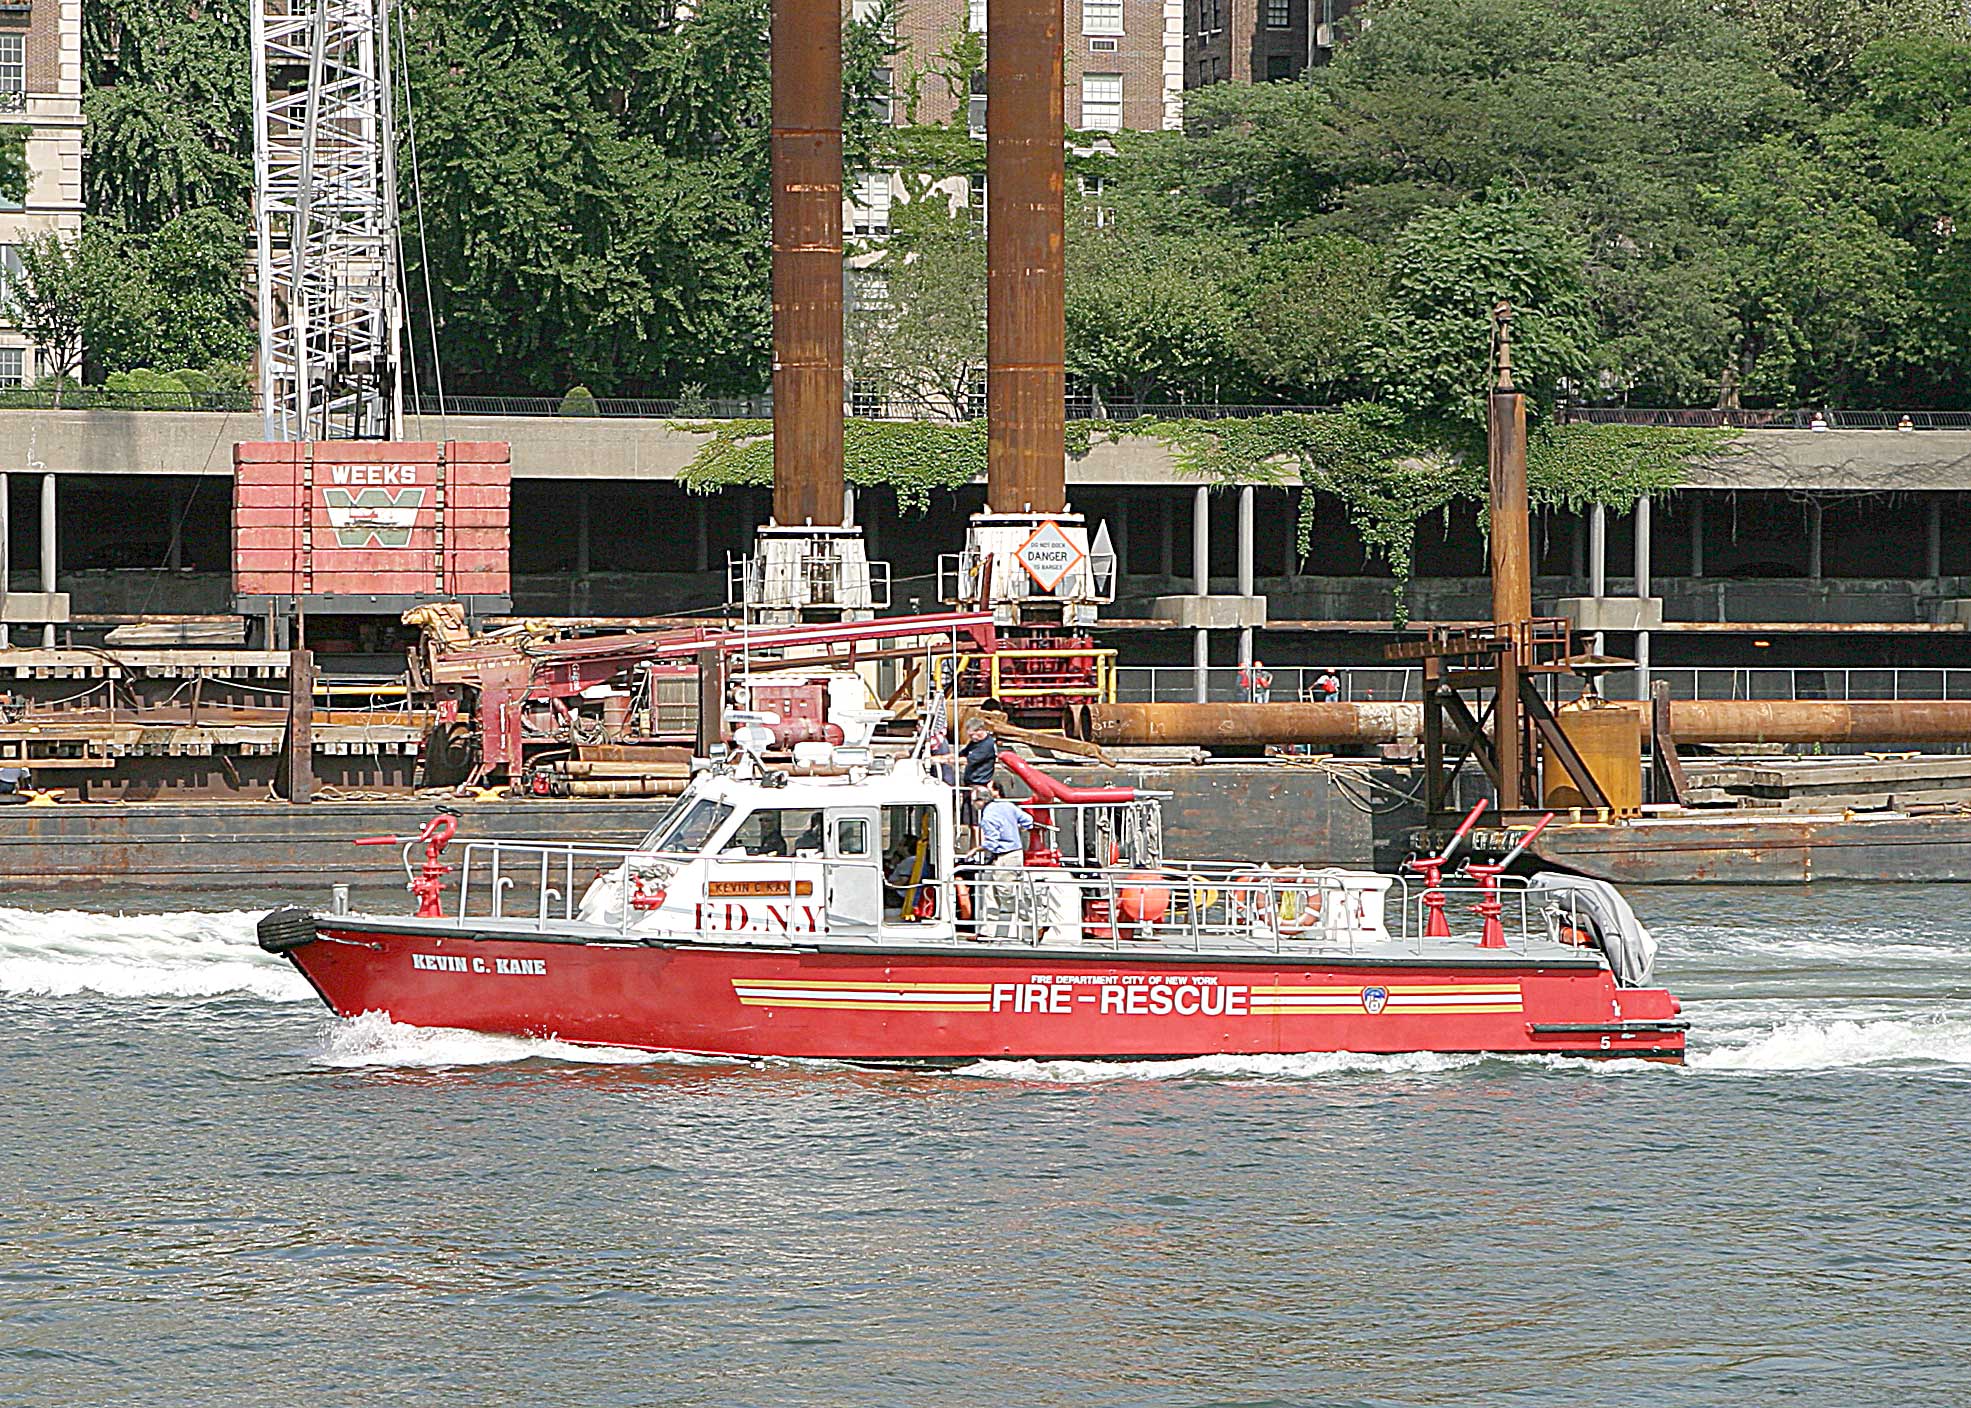 NYFD Fire Boat